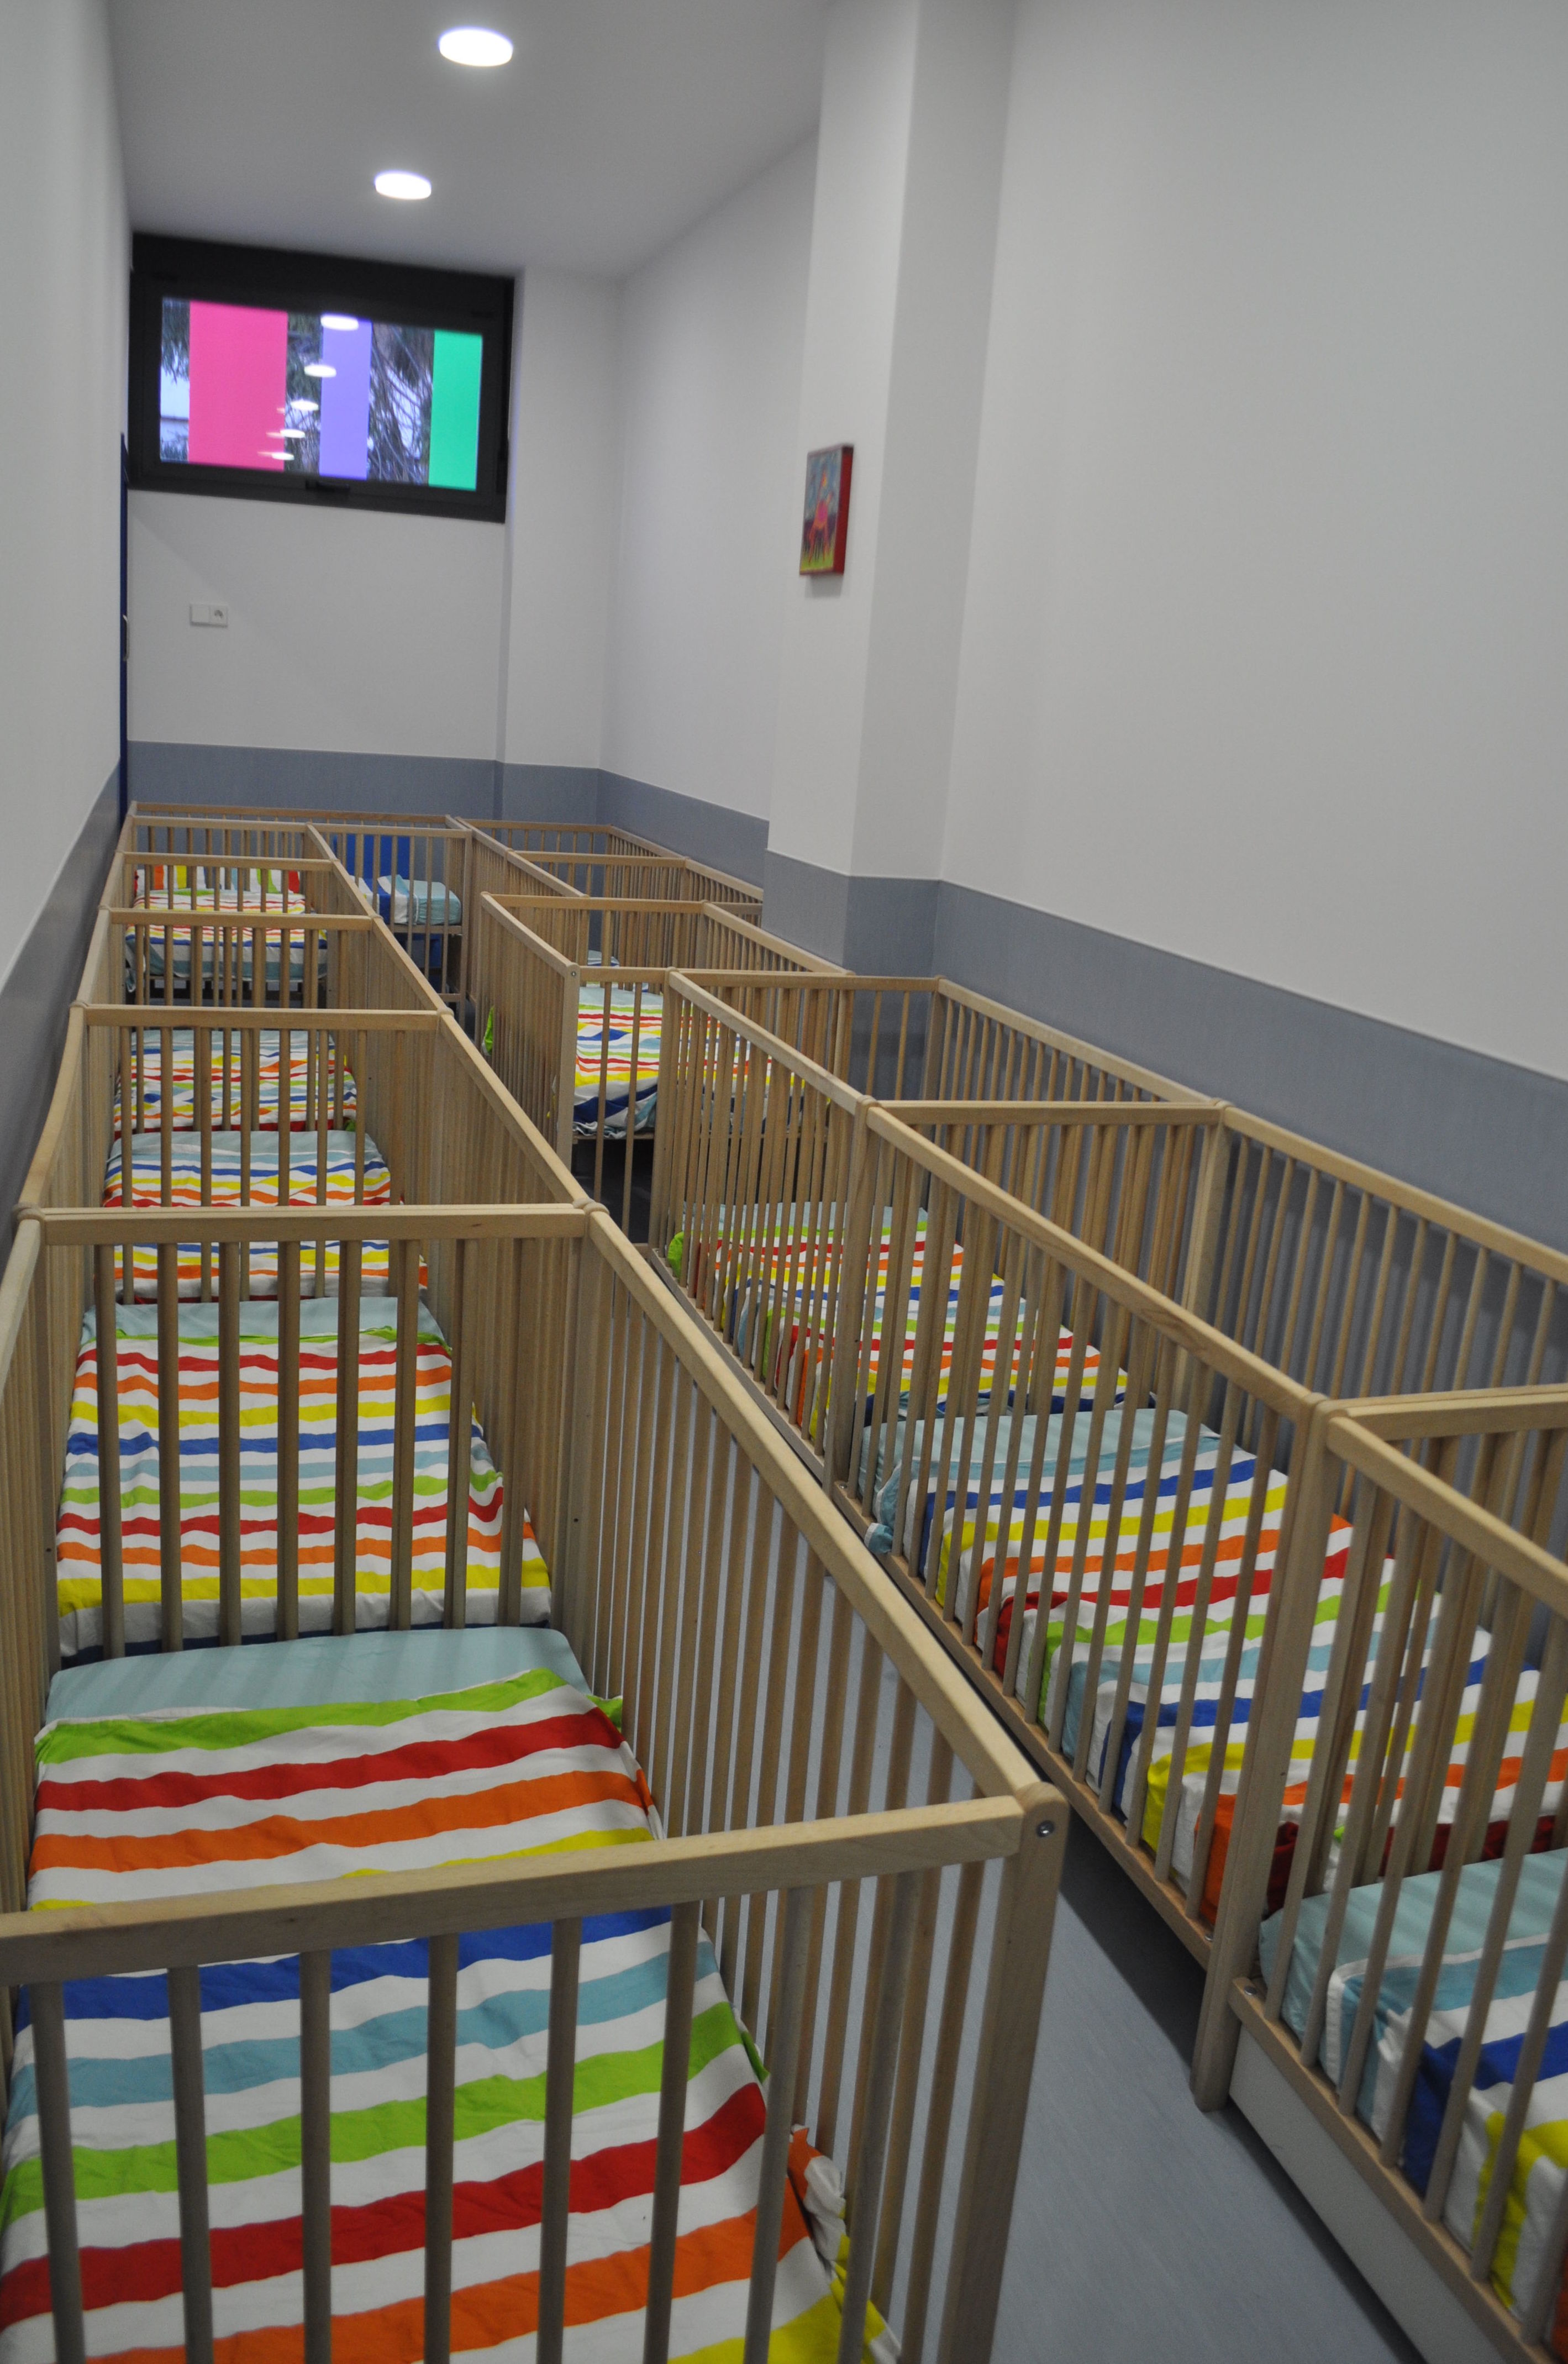 Foto 31 de Guarderías y Escuelas infantiles en Pamplona | Baby School